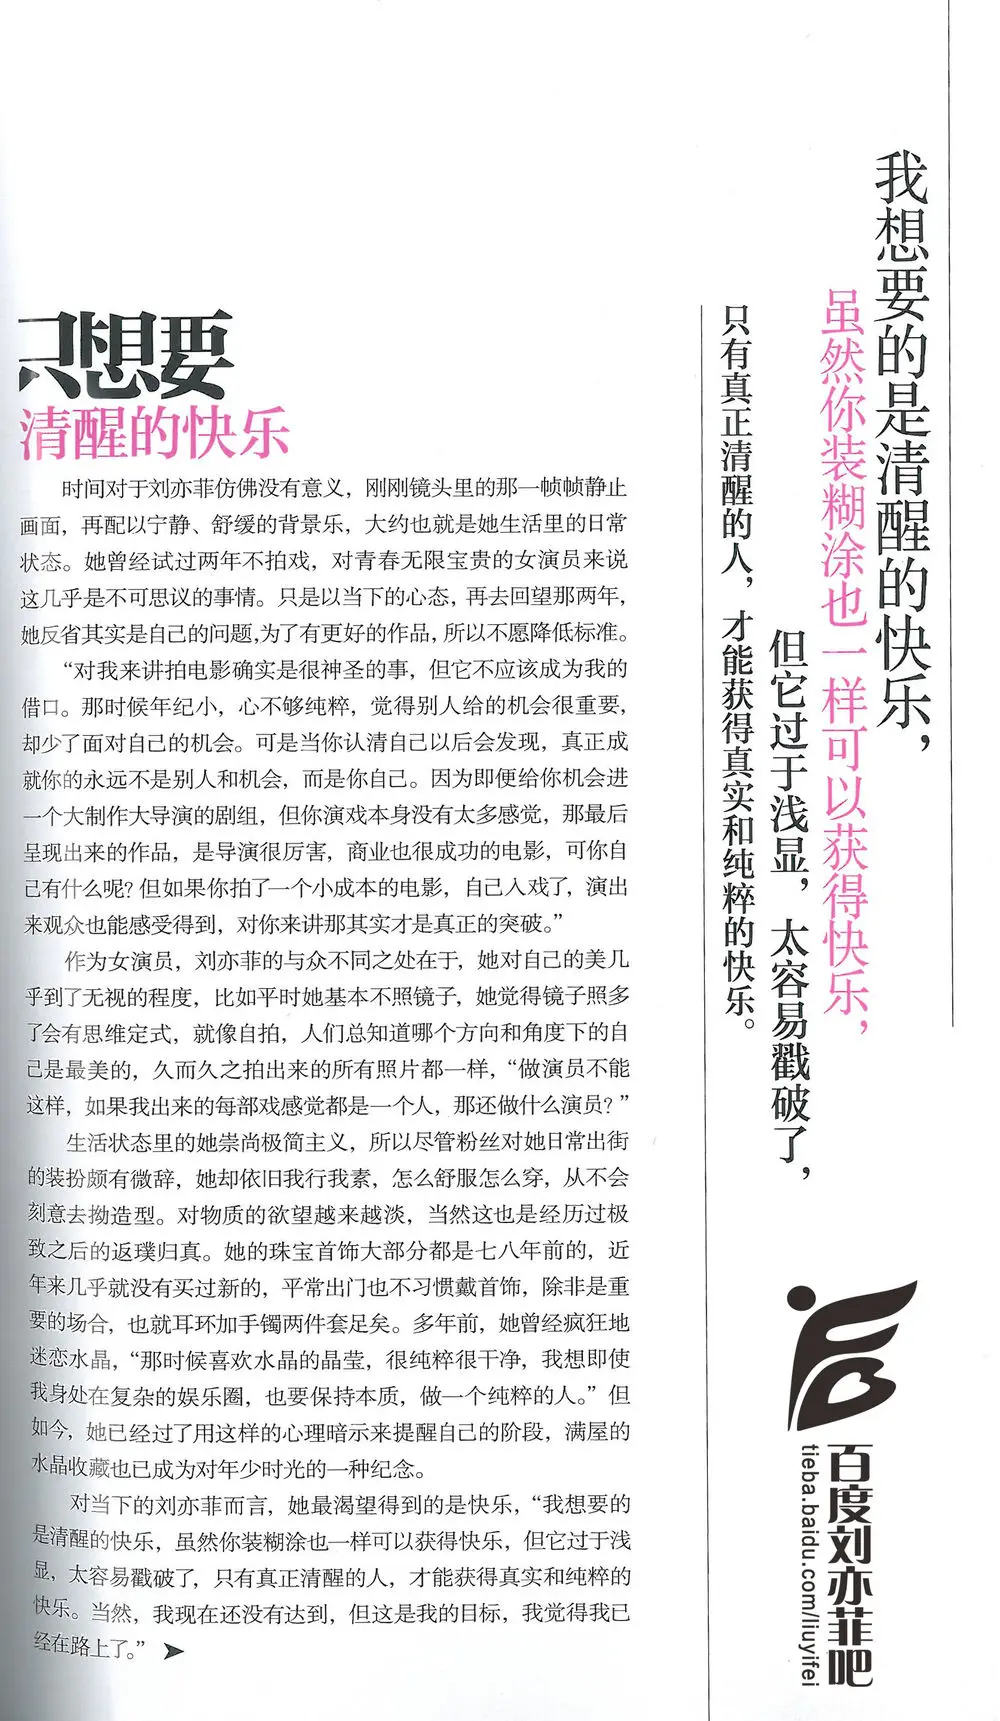 《芭莎珠宝》12月刊内页文字扫描版  《刘亦菲》[2015.12.14]